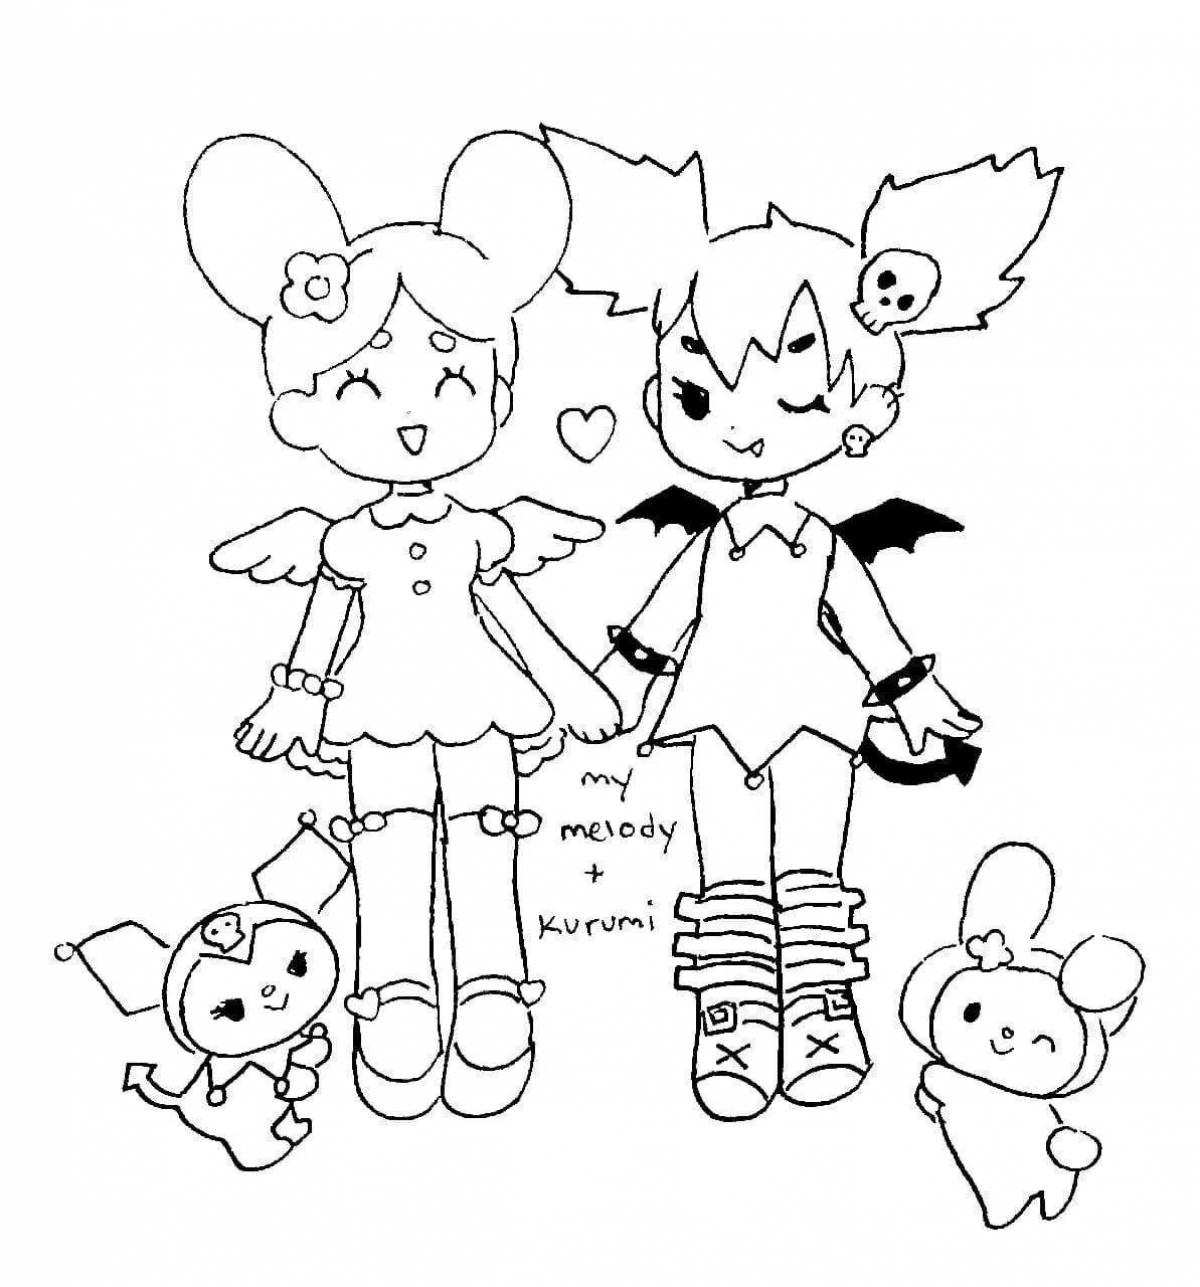 Jovial Kurumi and Mai Melody coloring page